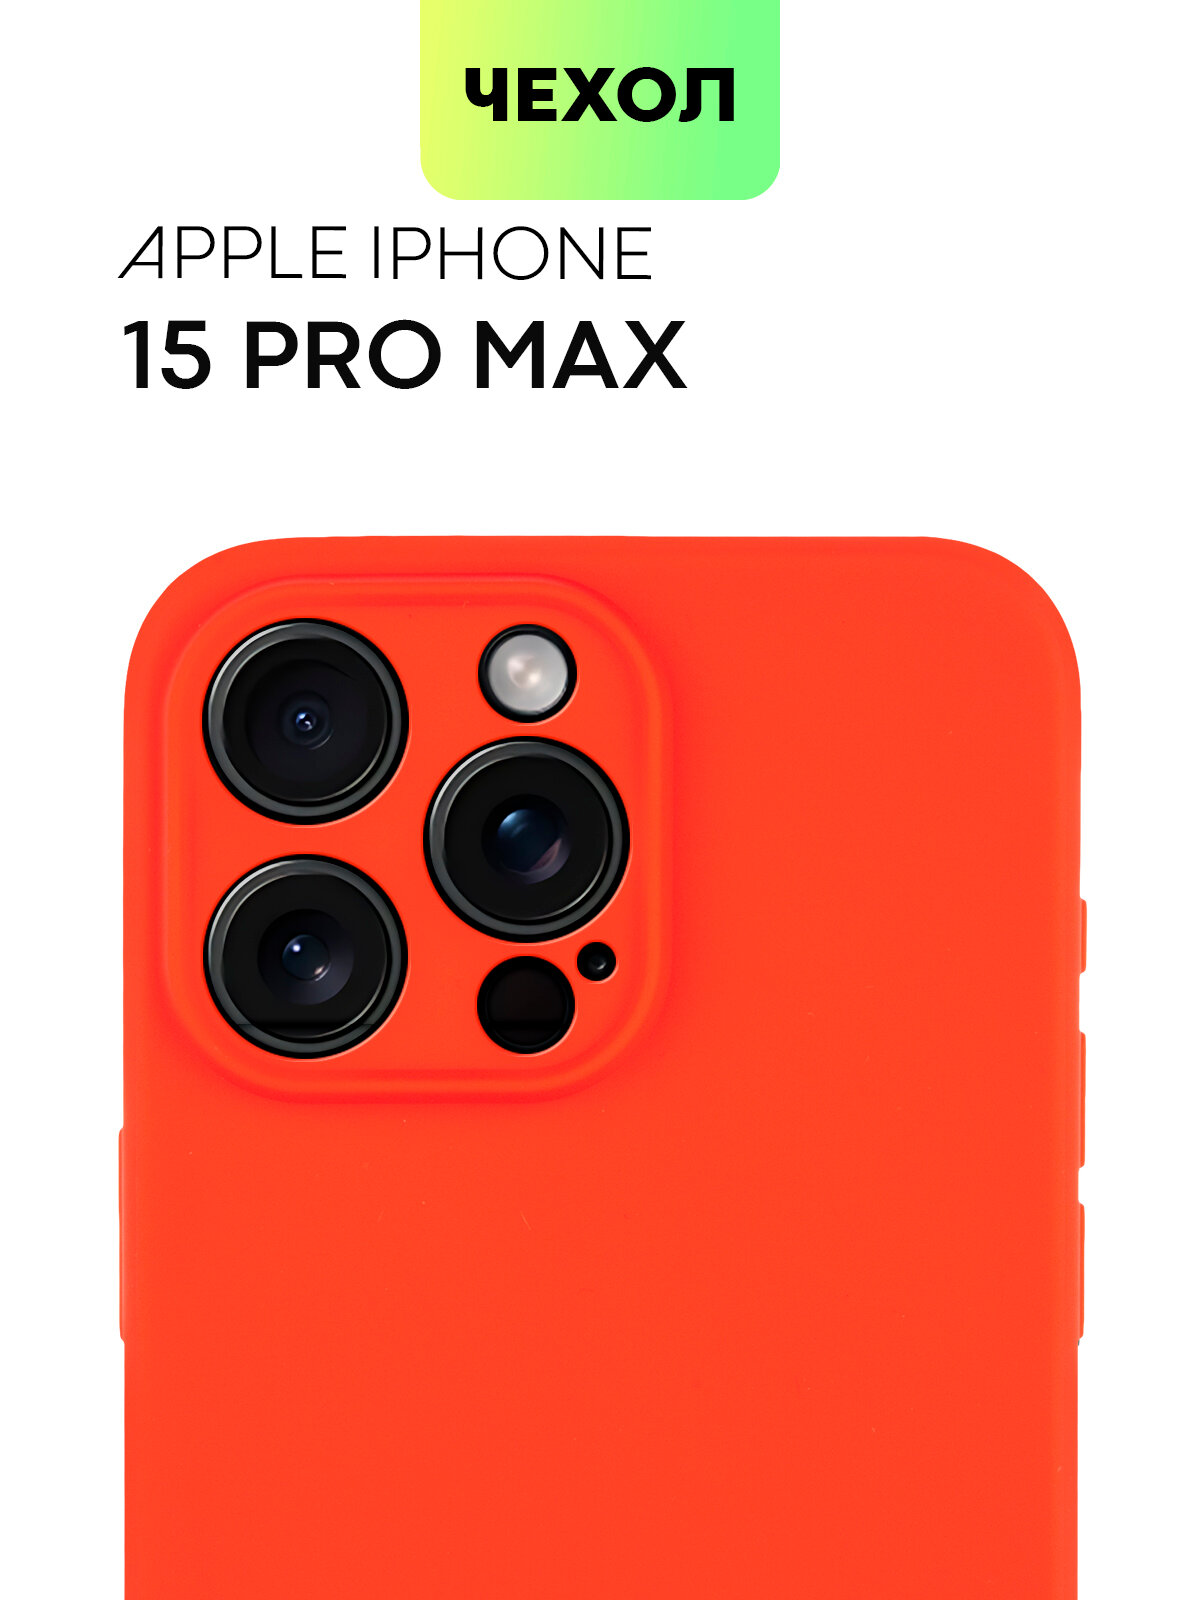 Чехол BROSCORP для Apple iPhone 15 Pro Max (Эпл Айфон 15 Про Макс), тонкий, силиконовый чехол, с матовым покрытием и защитой камер, красный